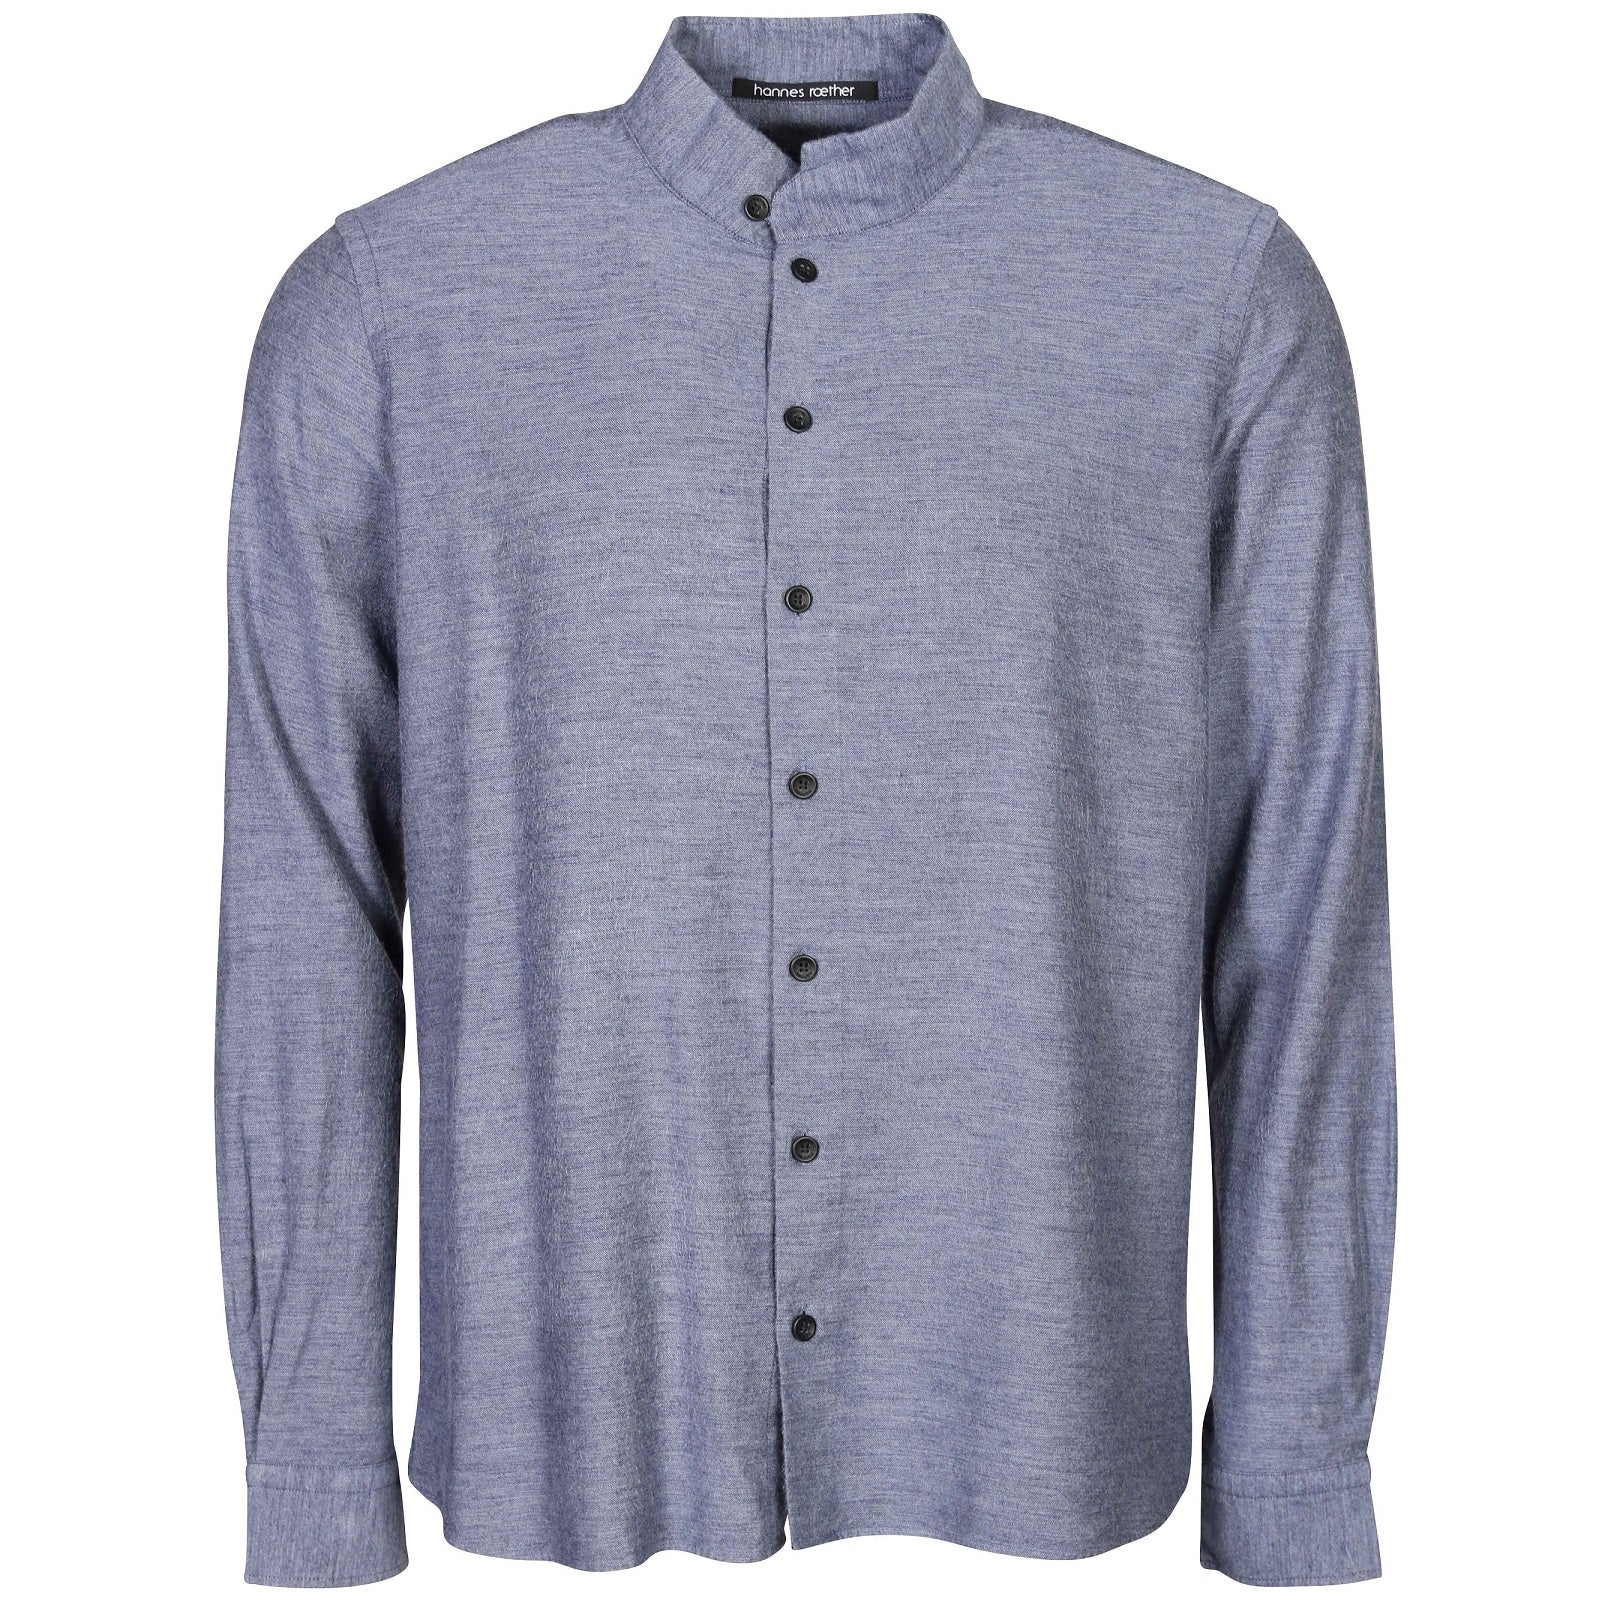 Grey linen long shirt